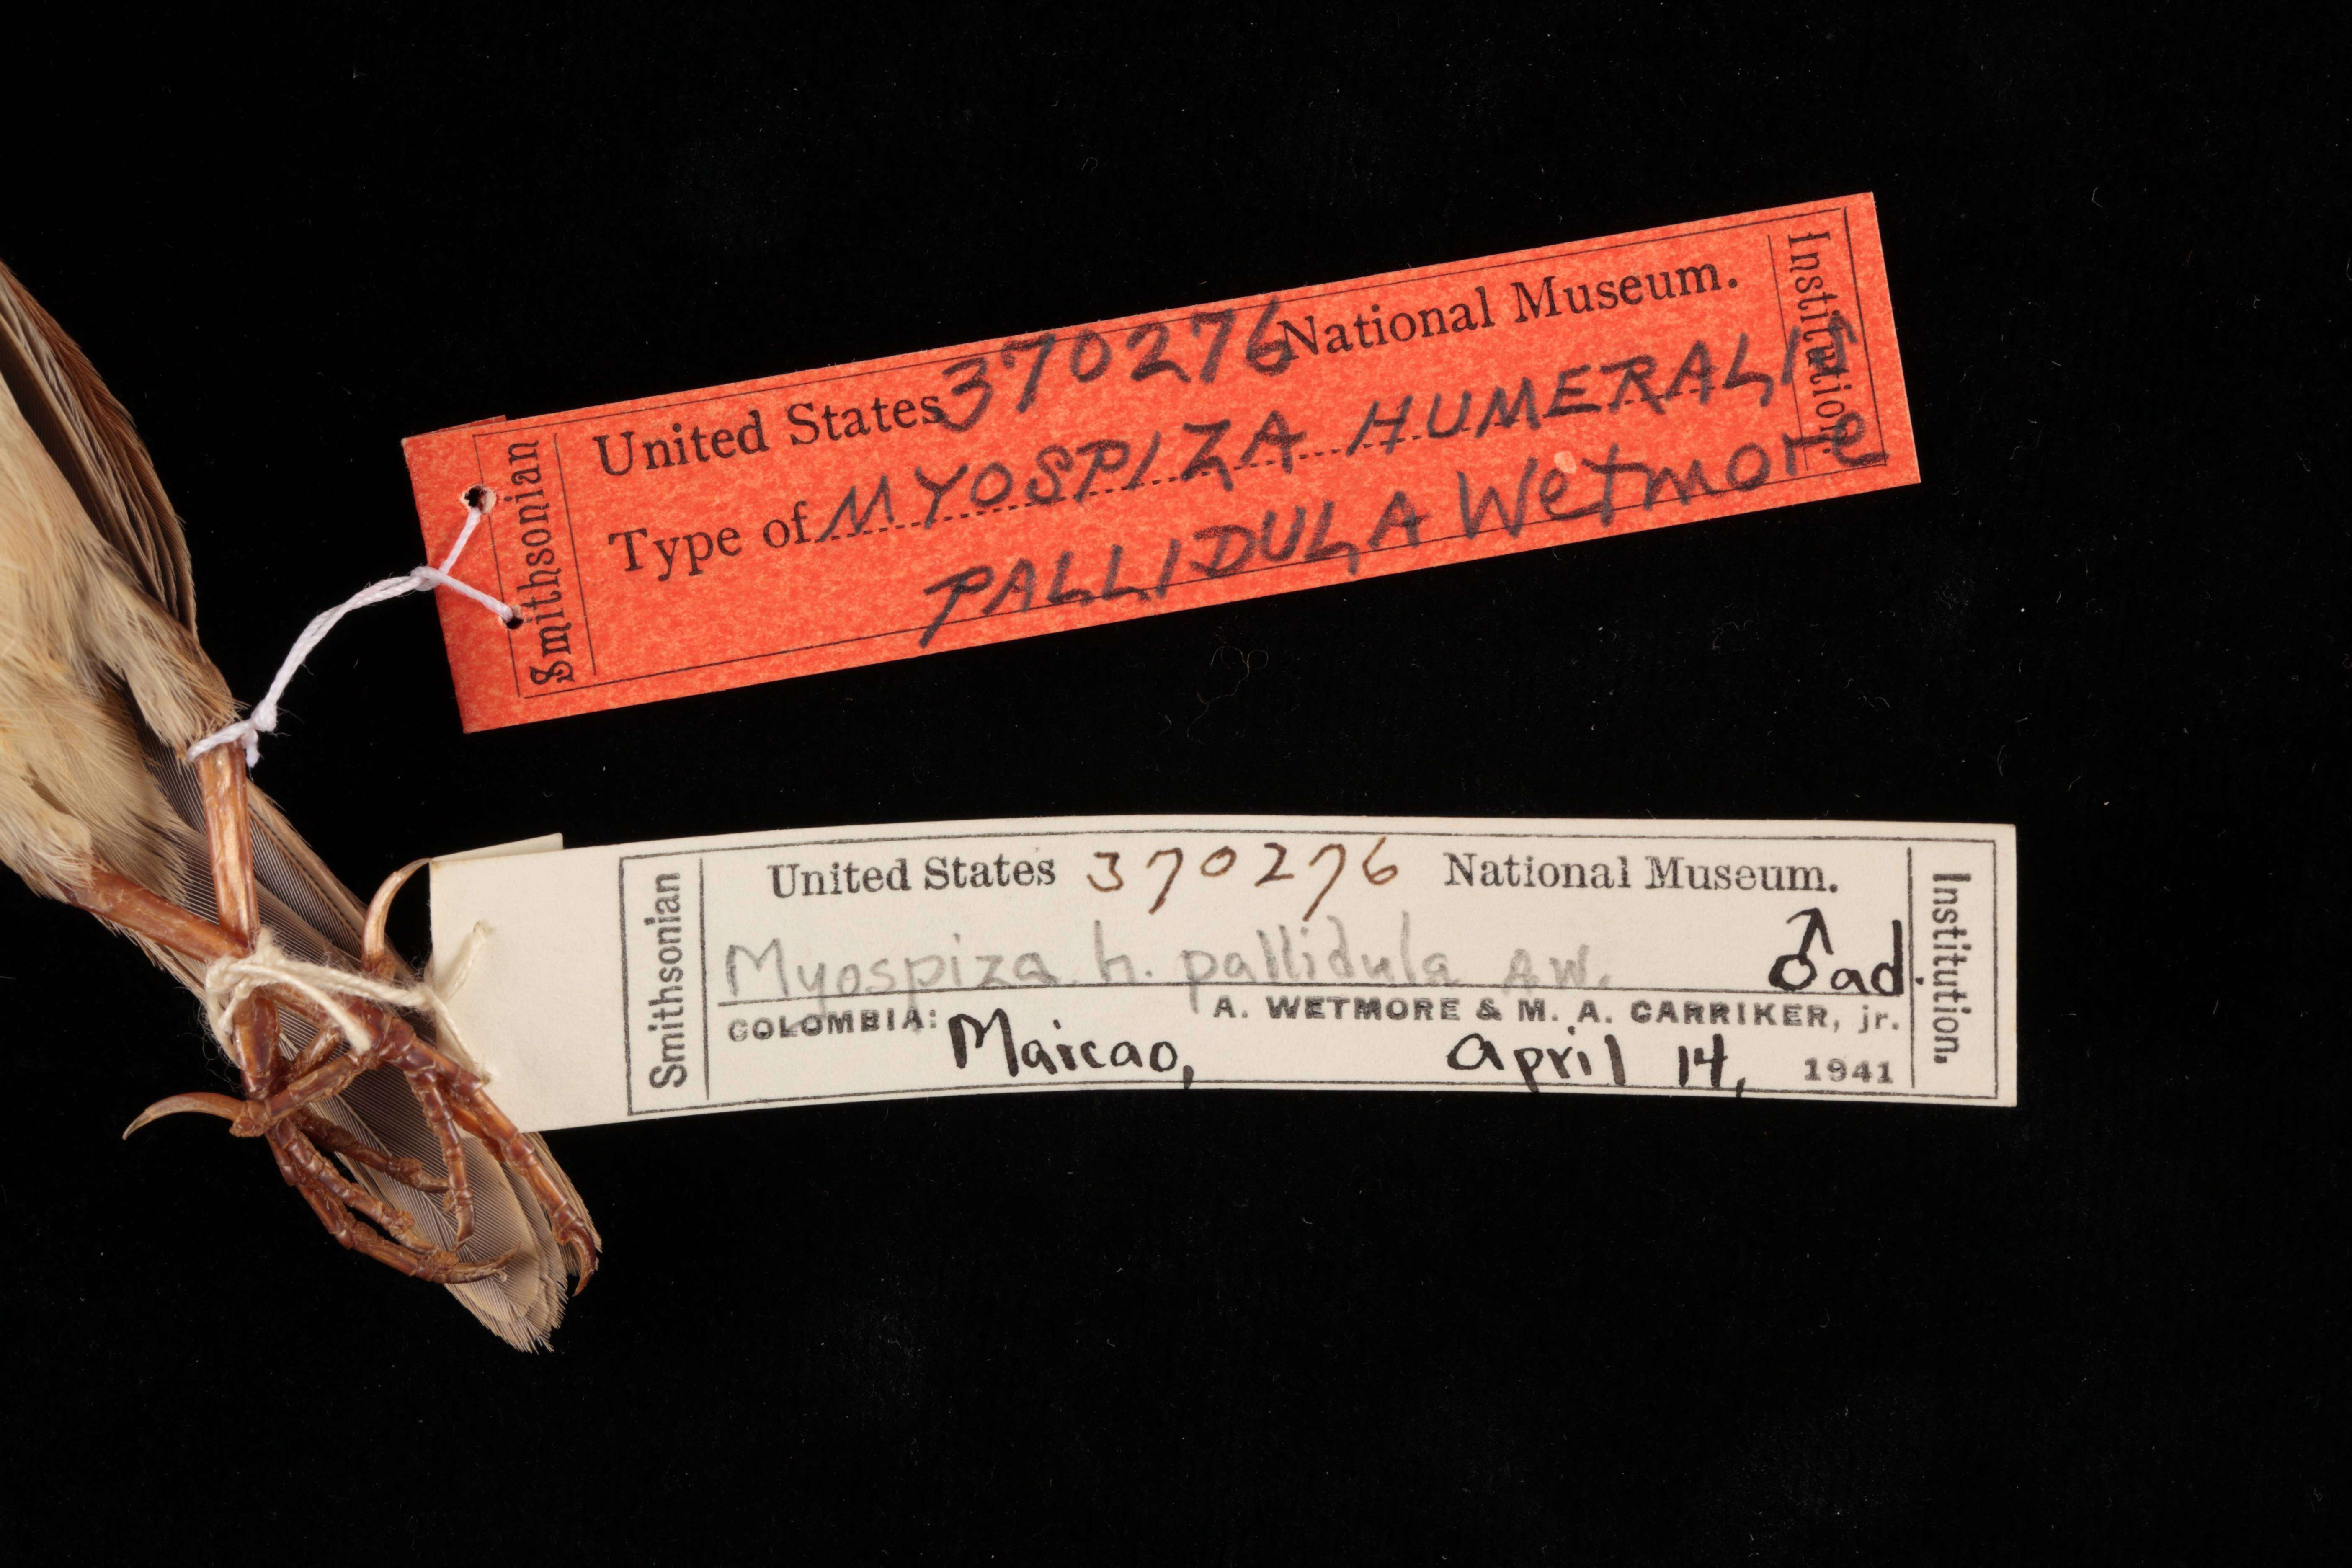 Image of Ammodramus humeralis pallidulus (Wetmore 1949)